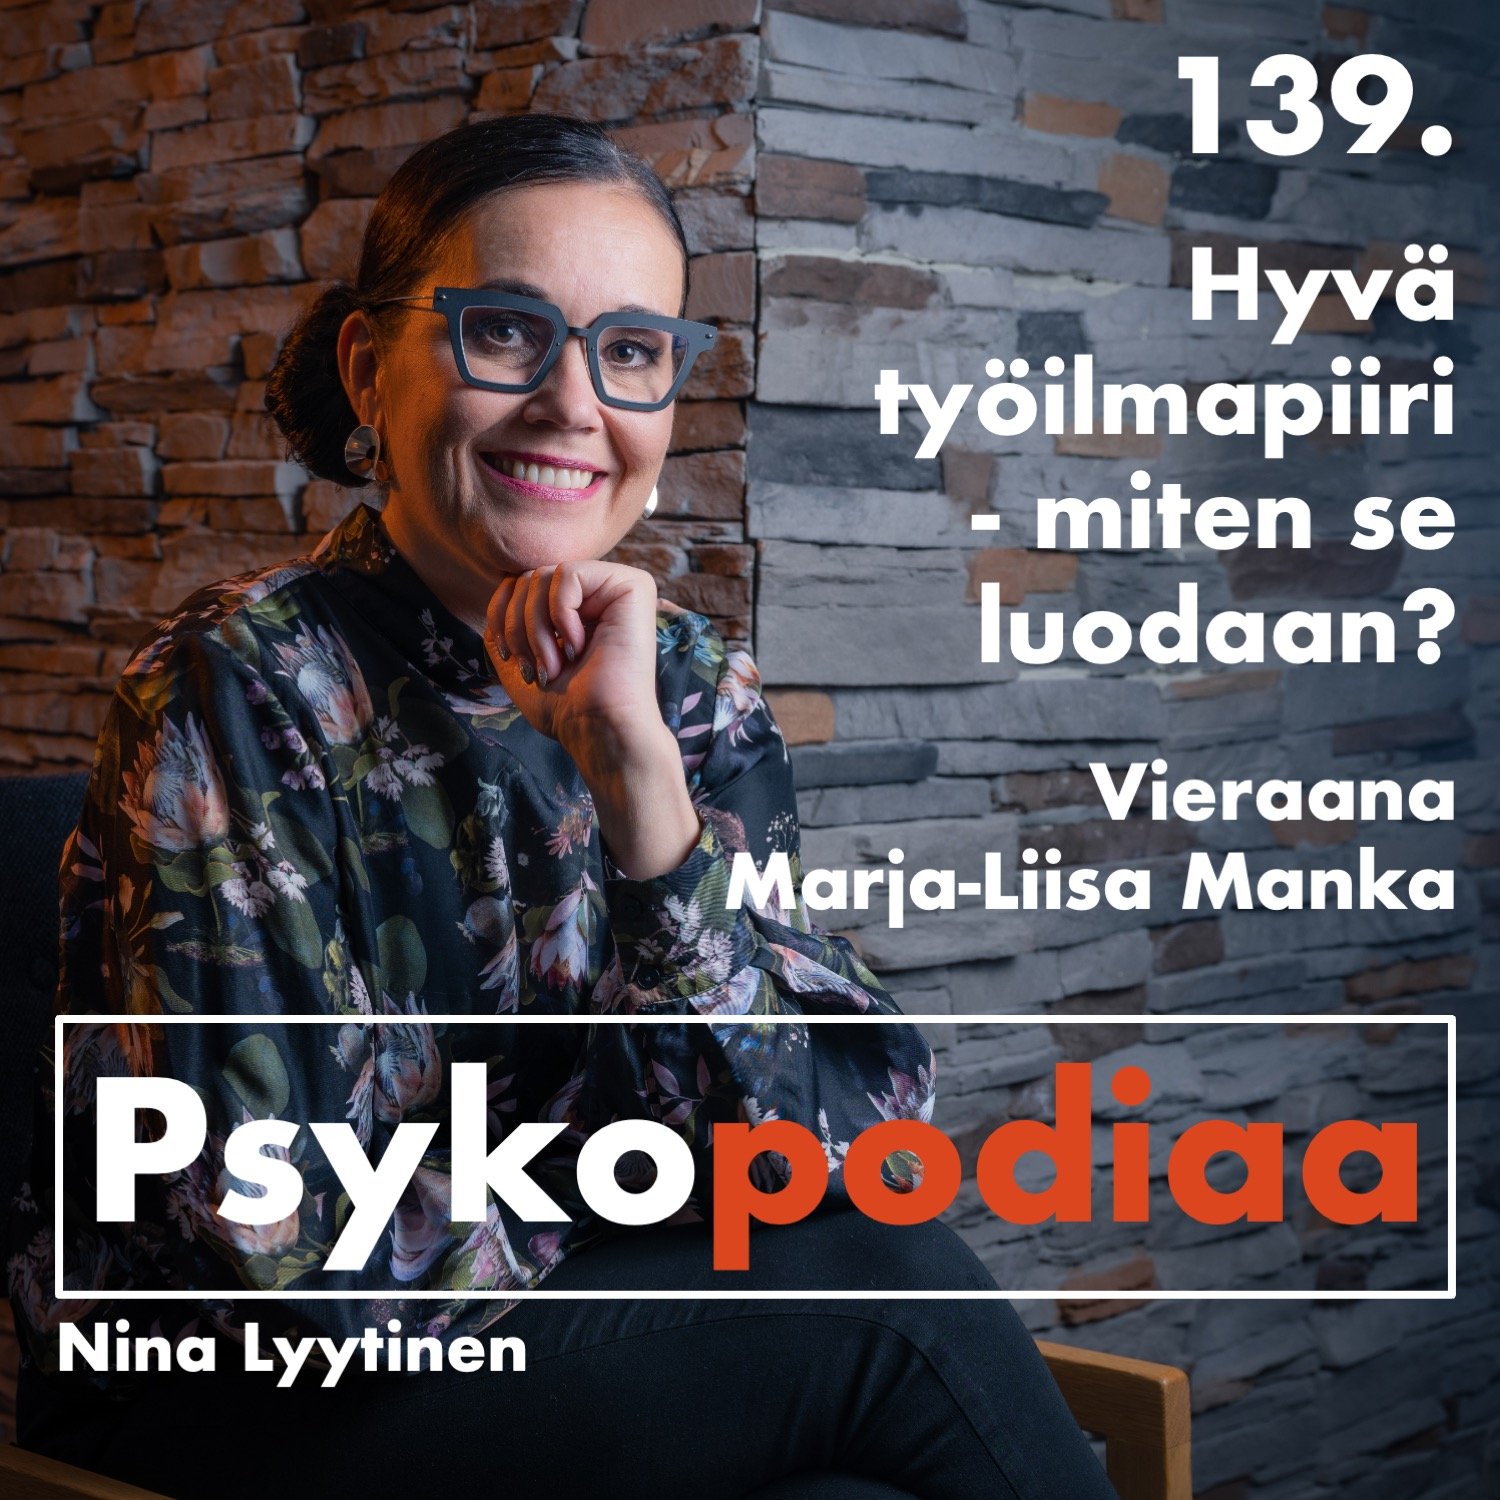 139. Hyvä työilmapiiri - miten se luodaan? Vieraana Marja-Liisa Manka.